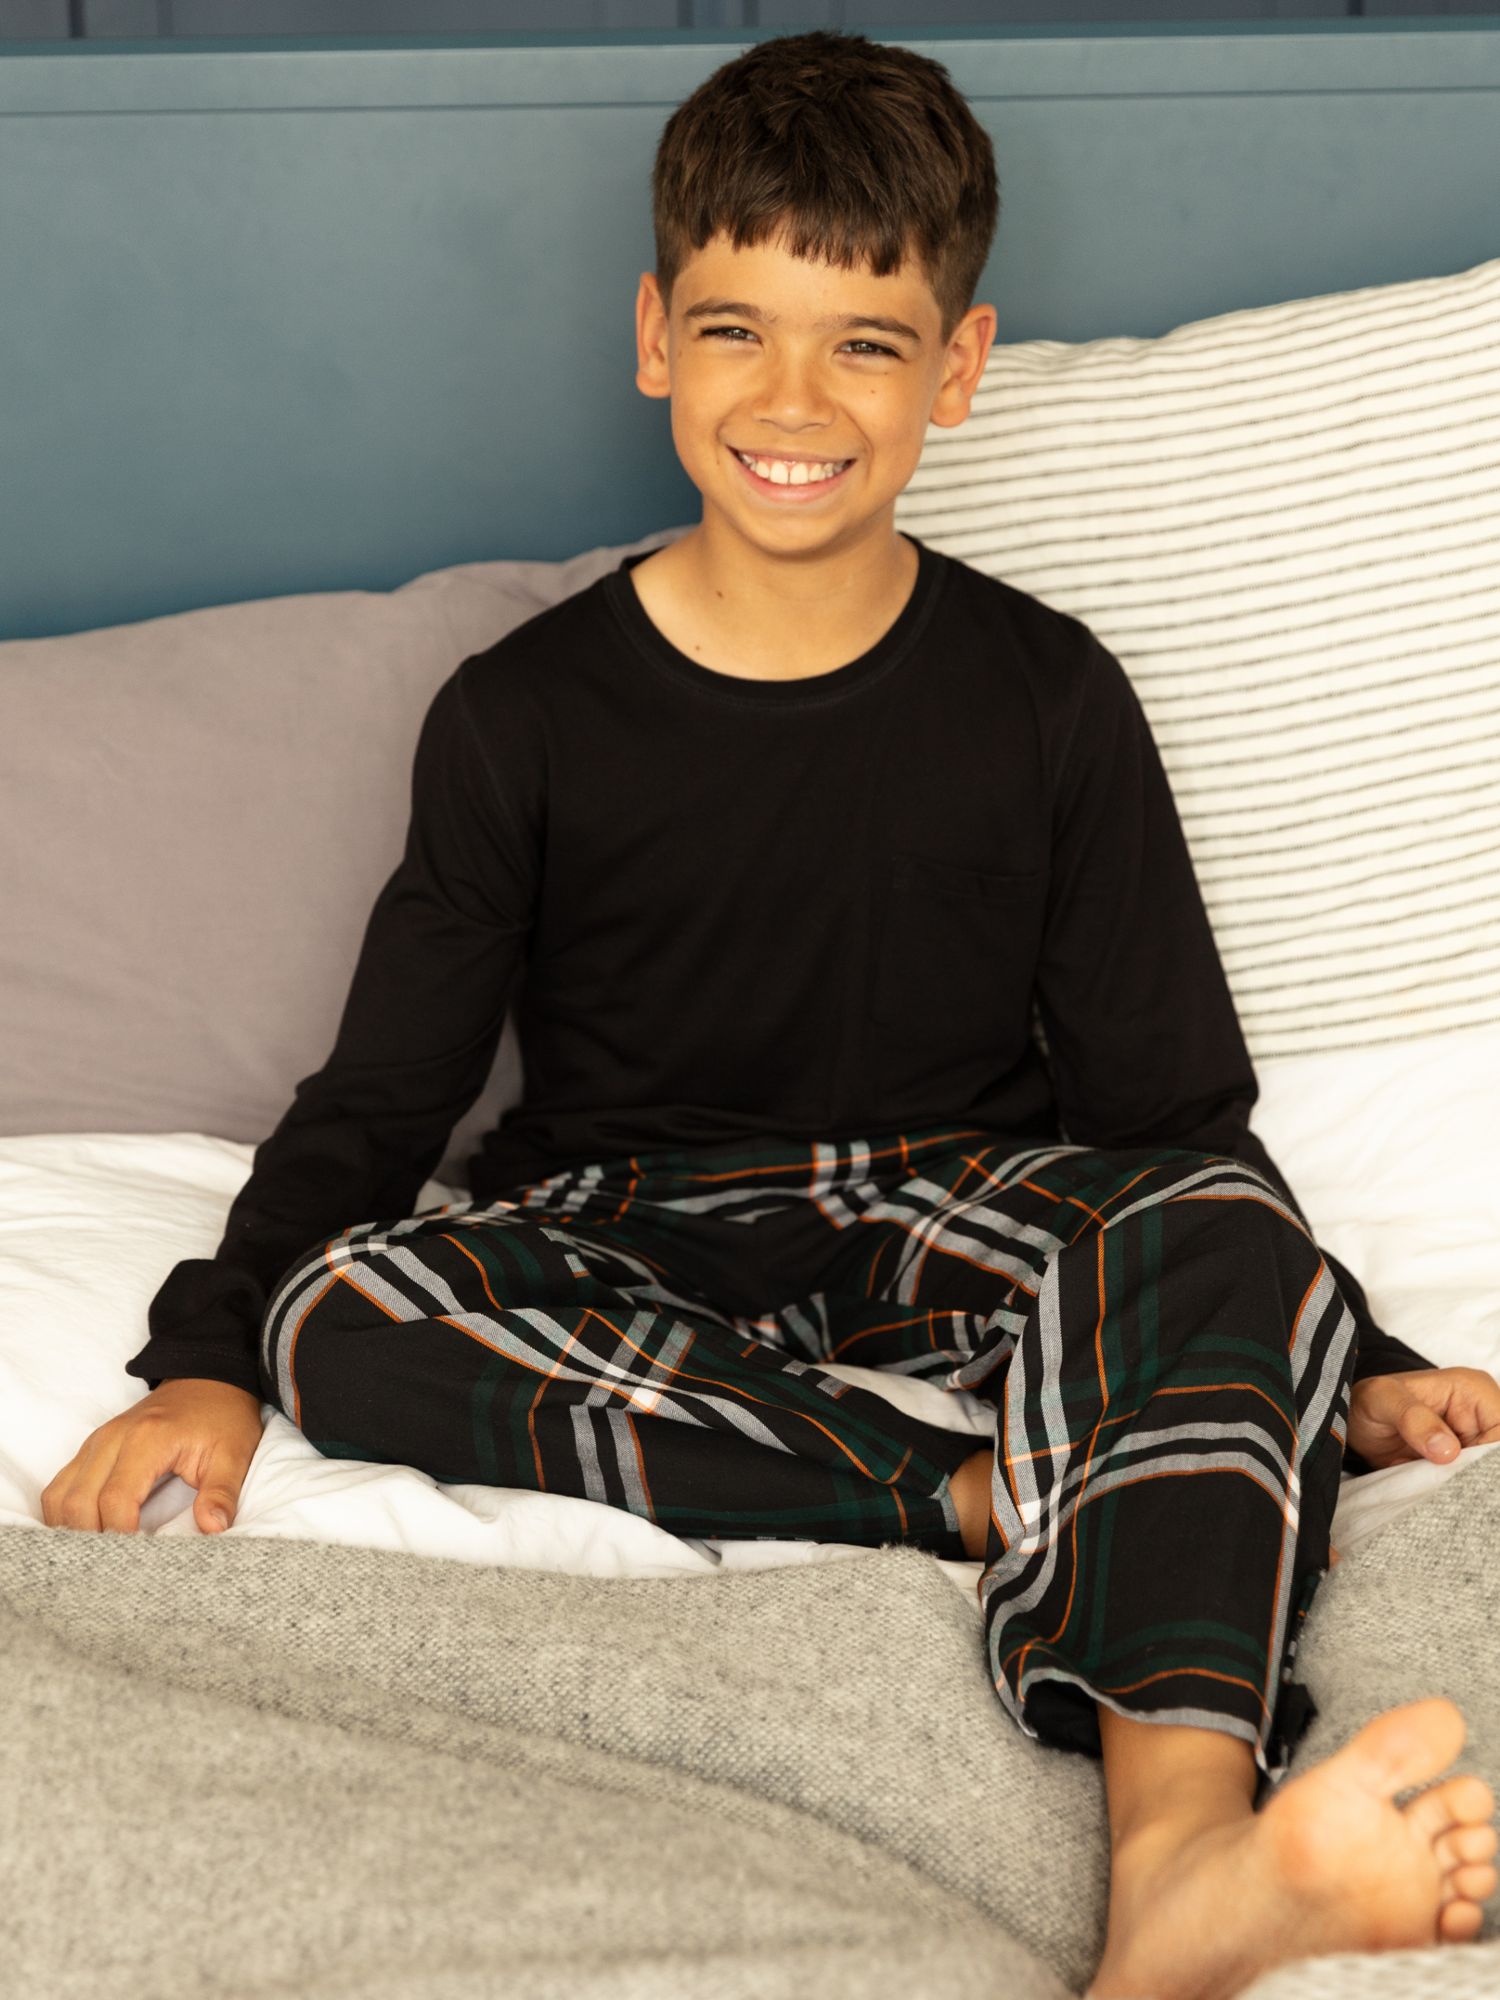 Minijammies Kids' Blake Check Print Pyjamas, Black.Multi, 2-3 years